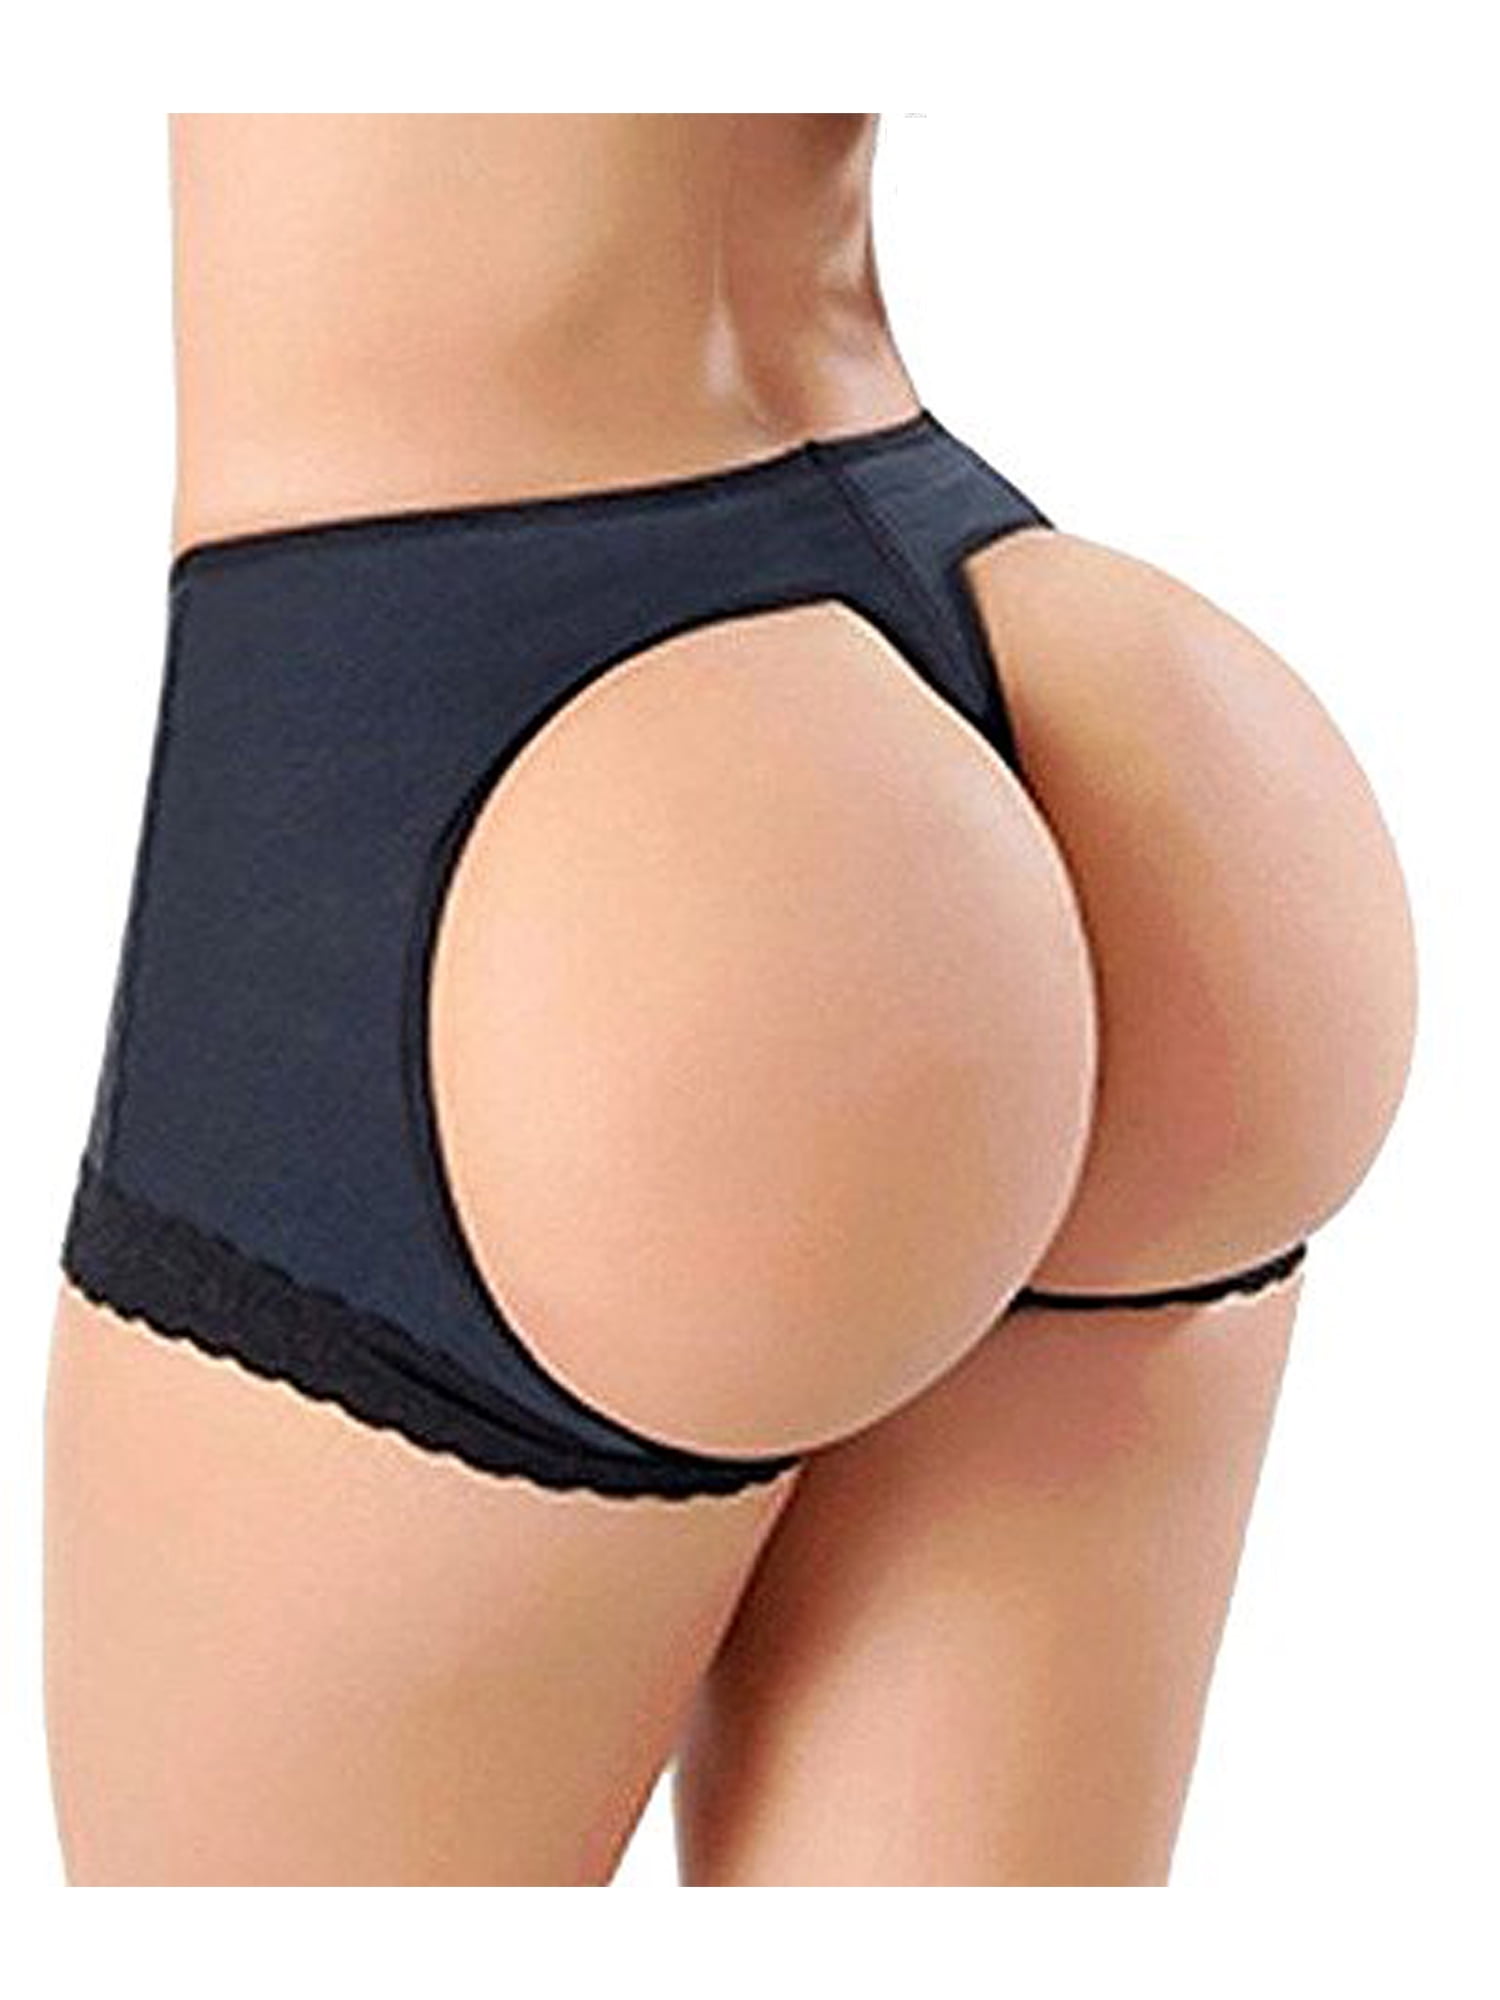 1500px x 2000px - Women's Butt Lifter Body Shaper Tummy Control Panties Underwear For Women  Butt Hip Enhancer Panties Boy Shorts Tummy Control Panties - Walmart.com